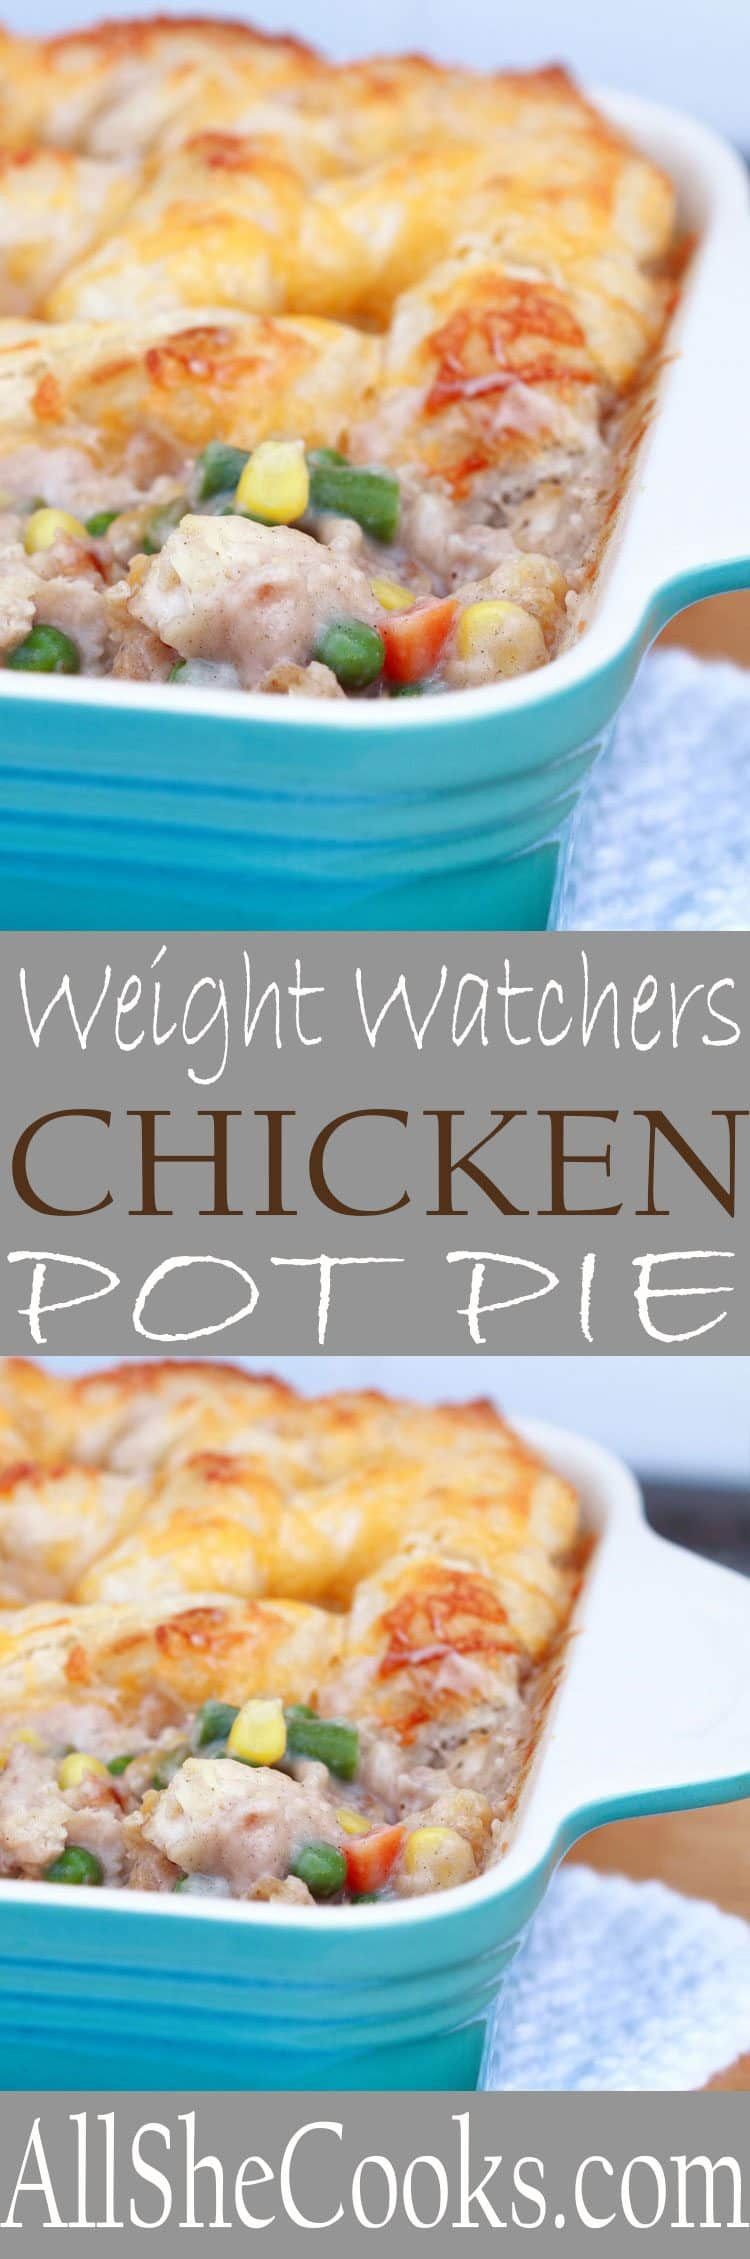 Low Fat Chicken Recipes Weight Watchers
 Chicken Pot Pie Weight Watchers